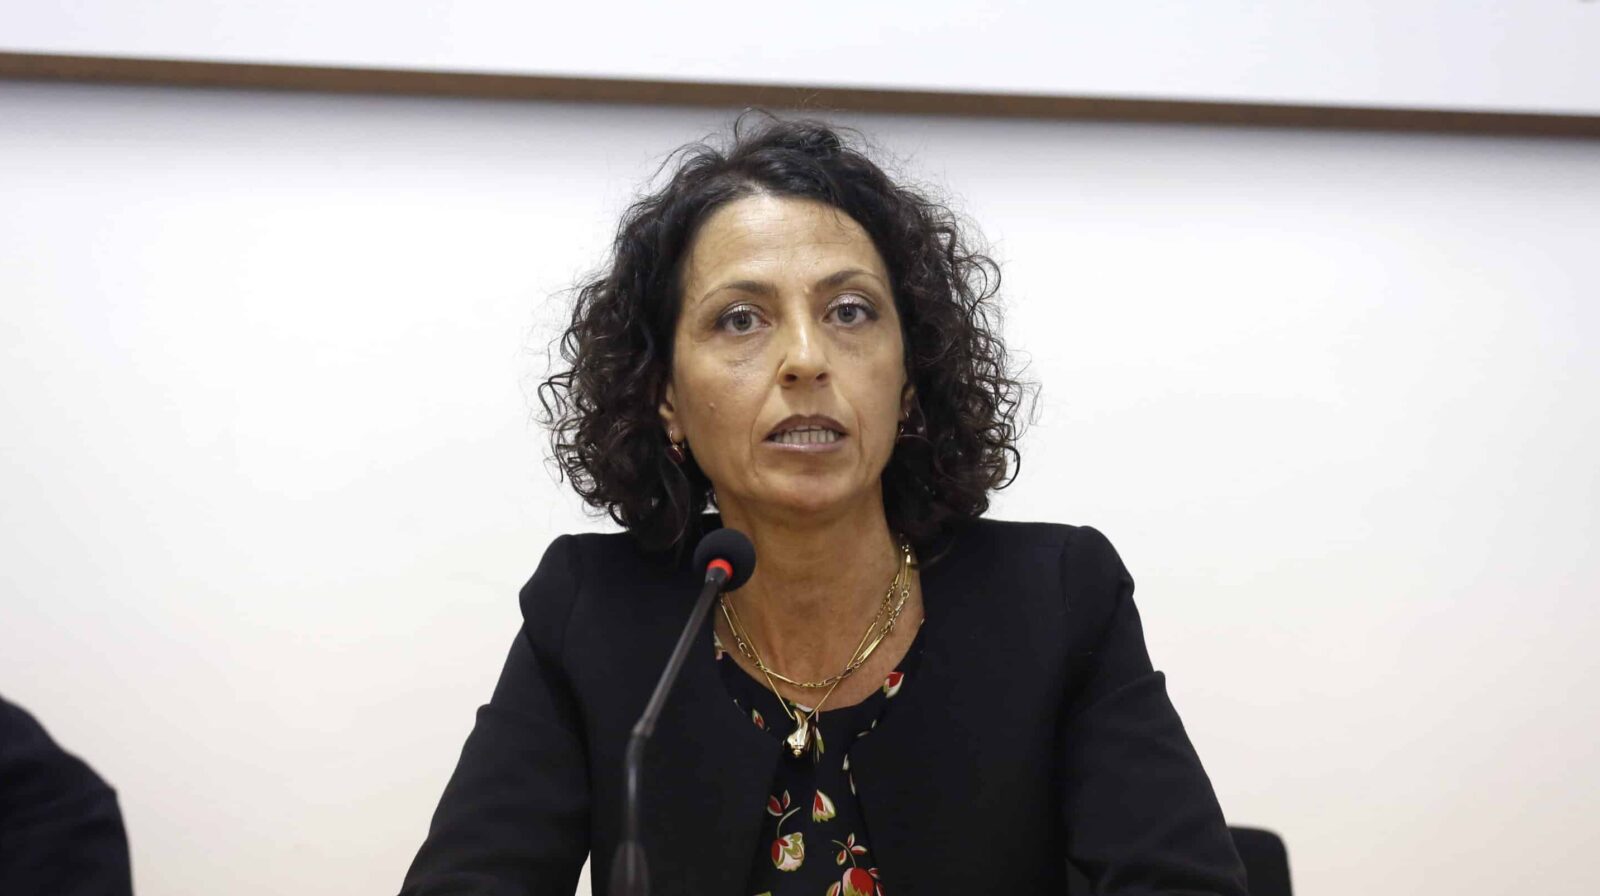 “Una riforma inutile e pericolosa per indebolire la magistratura”: parla la vicepresidente dell’Anm Maddalena